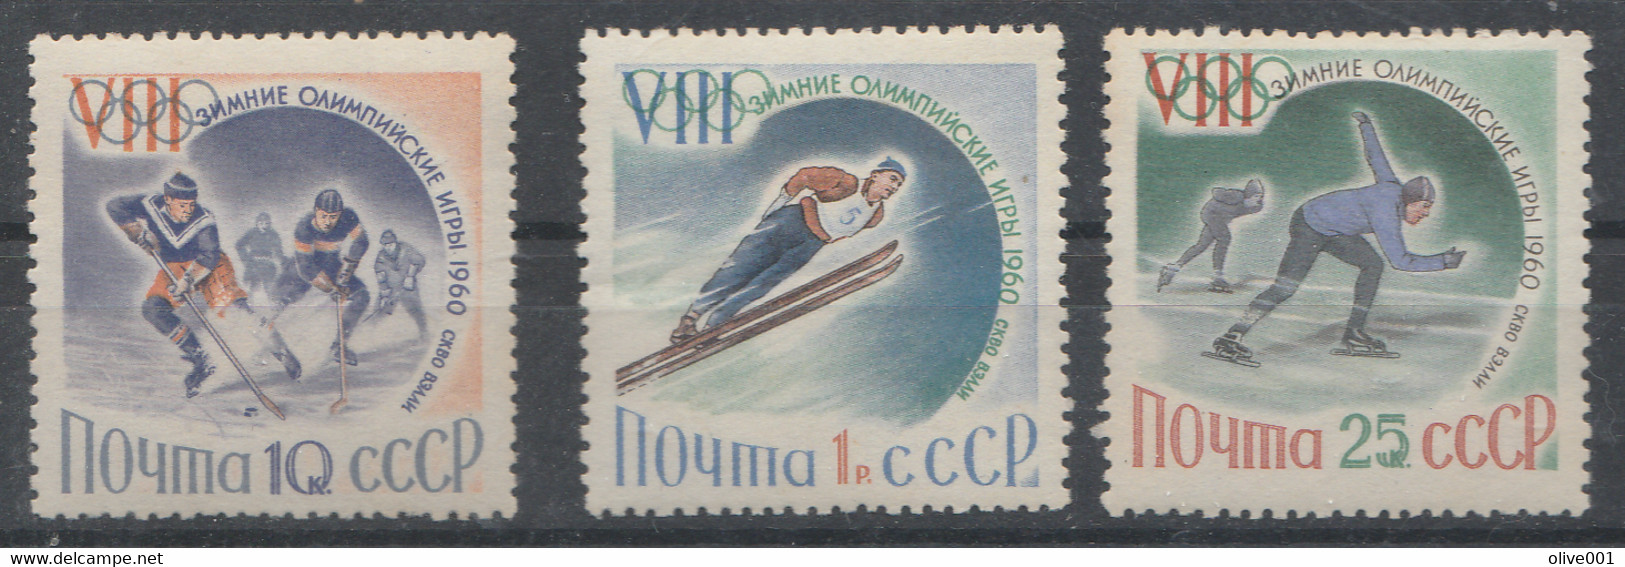 URSS - Timbres De 1960 - 3 Valeurs Des Jeux Olympiques D'hiver De Squaw Valley - MI N° 2317/19 MNH ** - Inverno1960: Squaw Valley